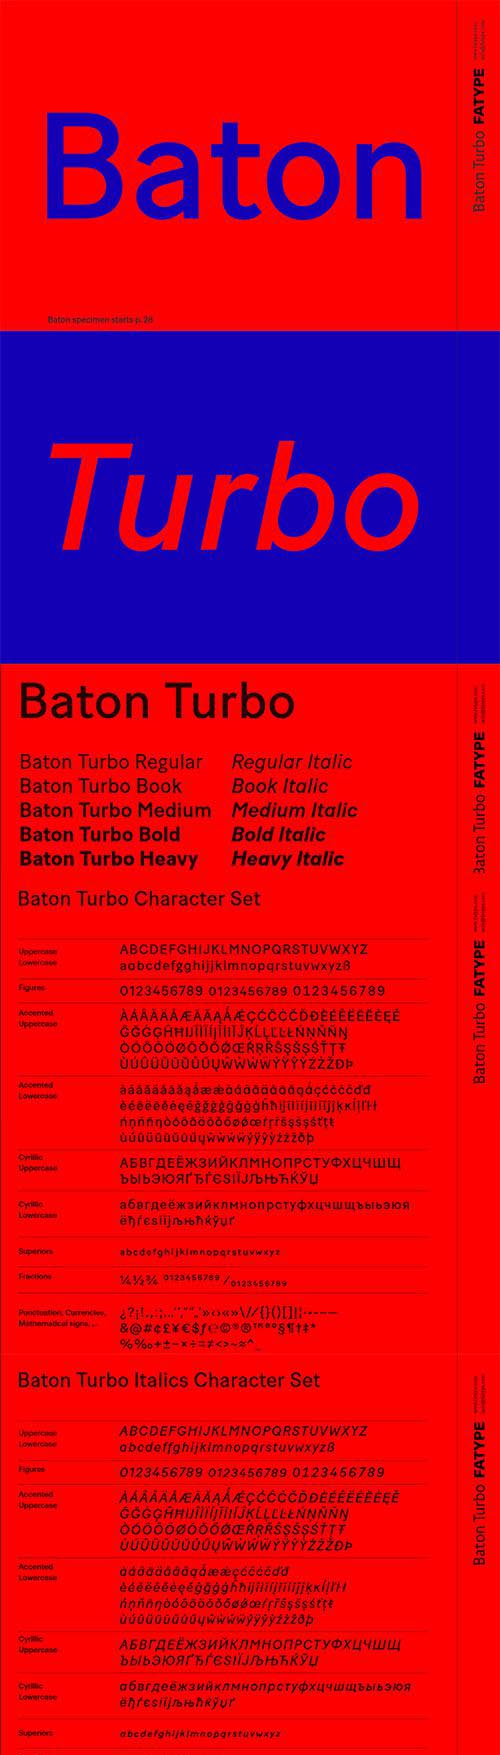 Baton Turbo font family